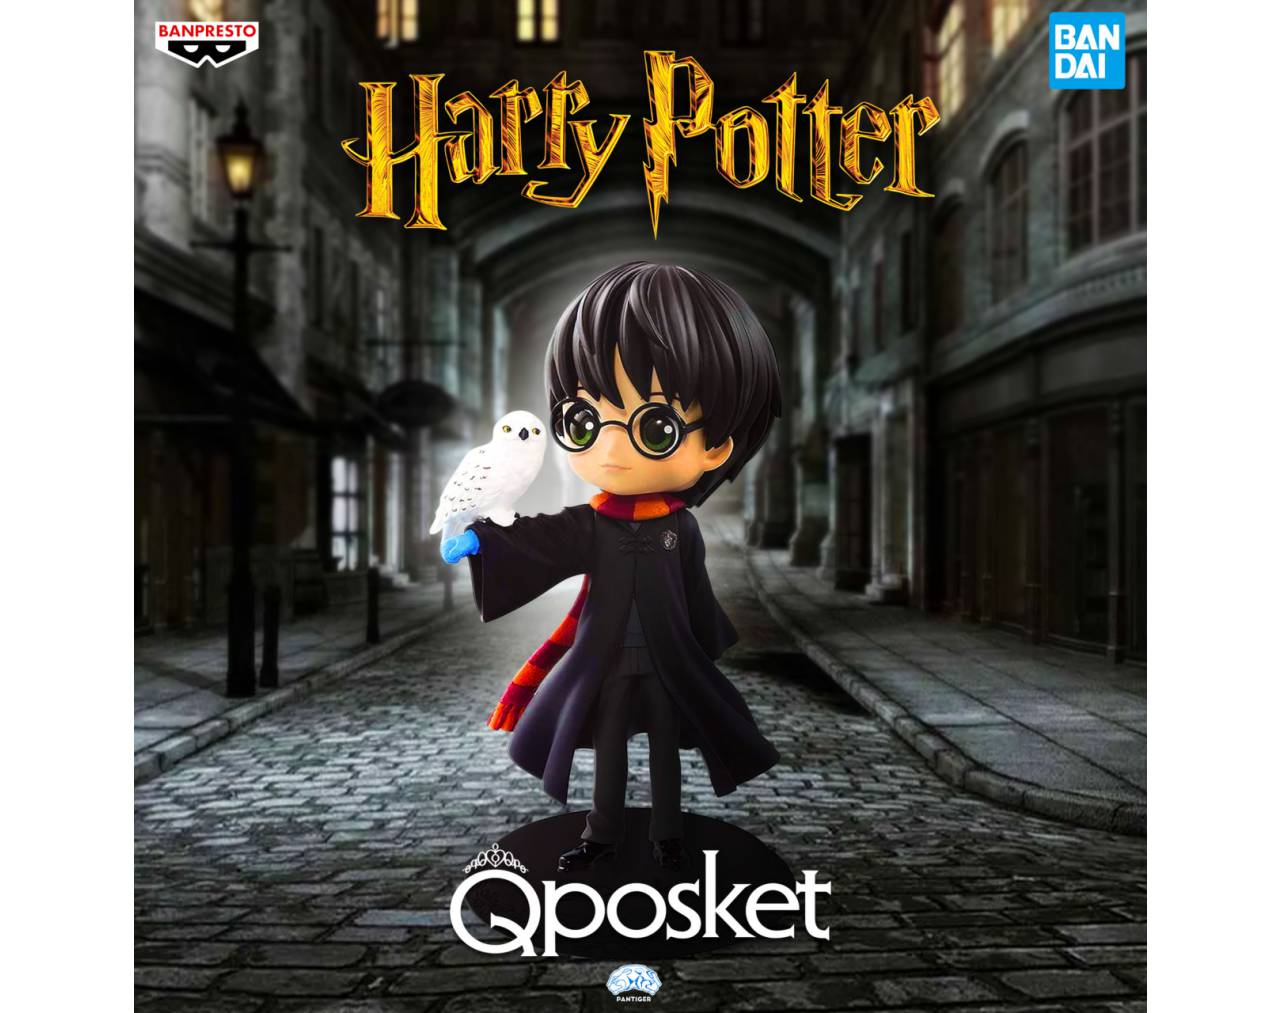 El regreso de las figuras de Harry Potter a Banpresto